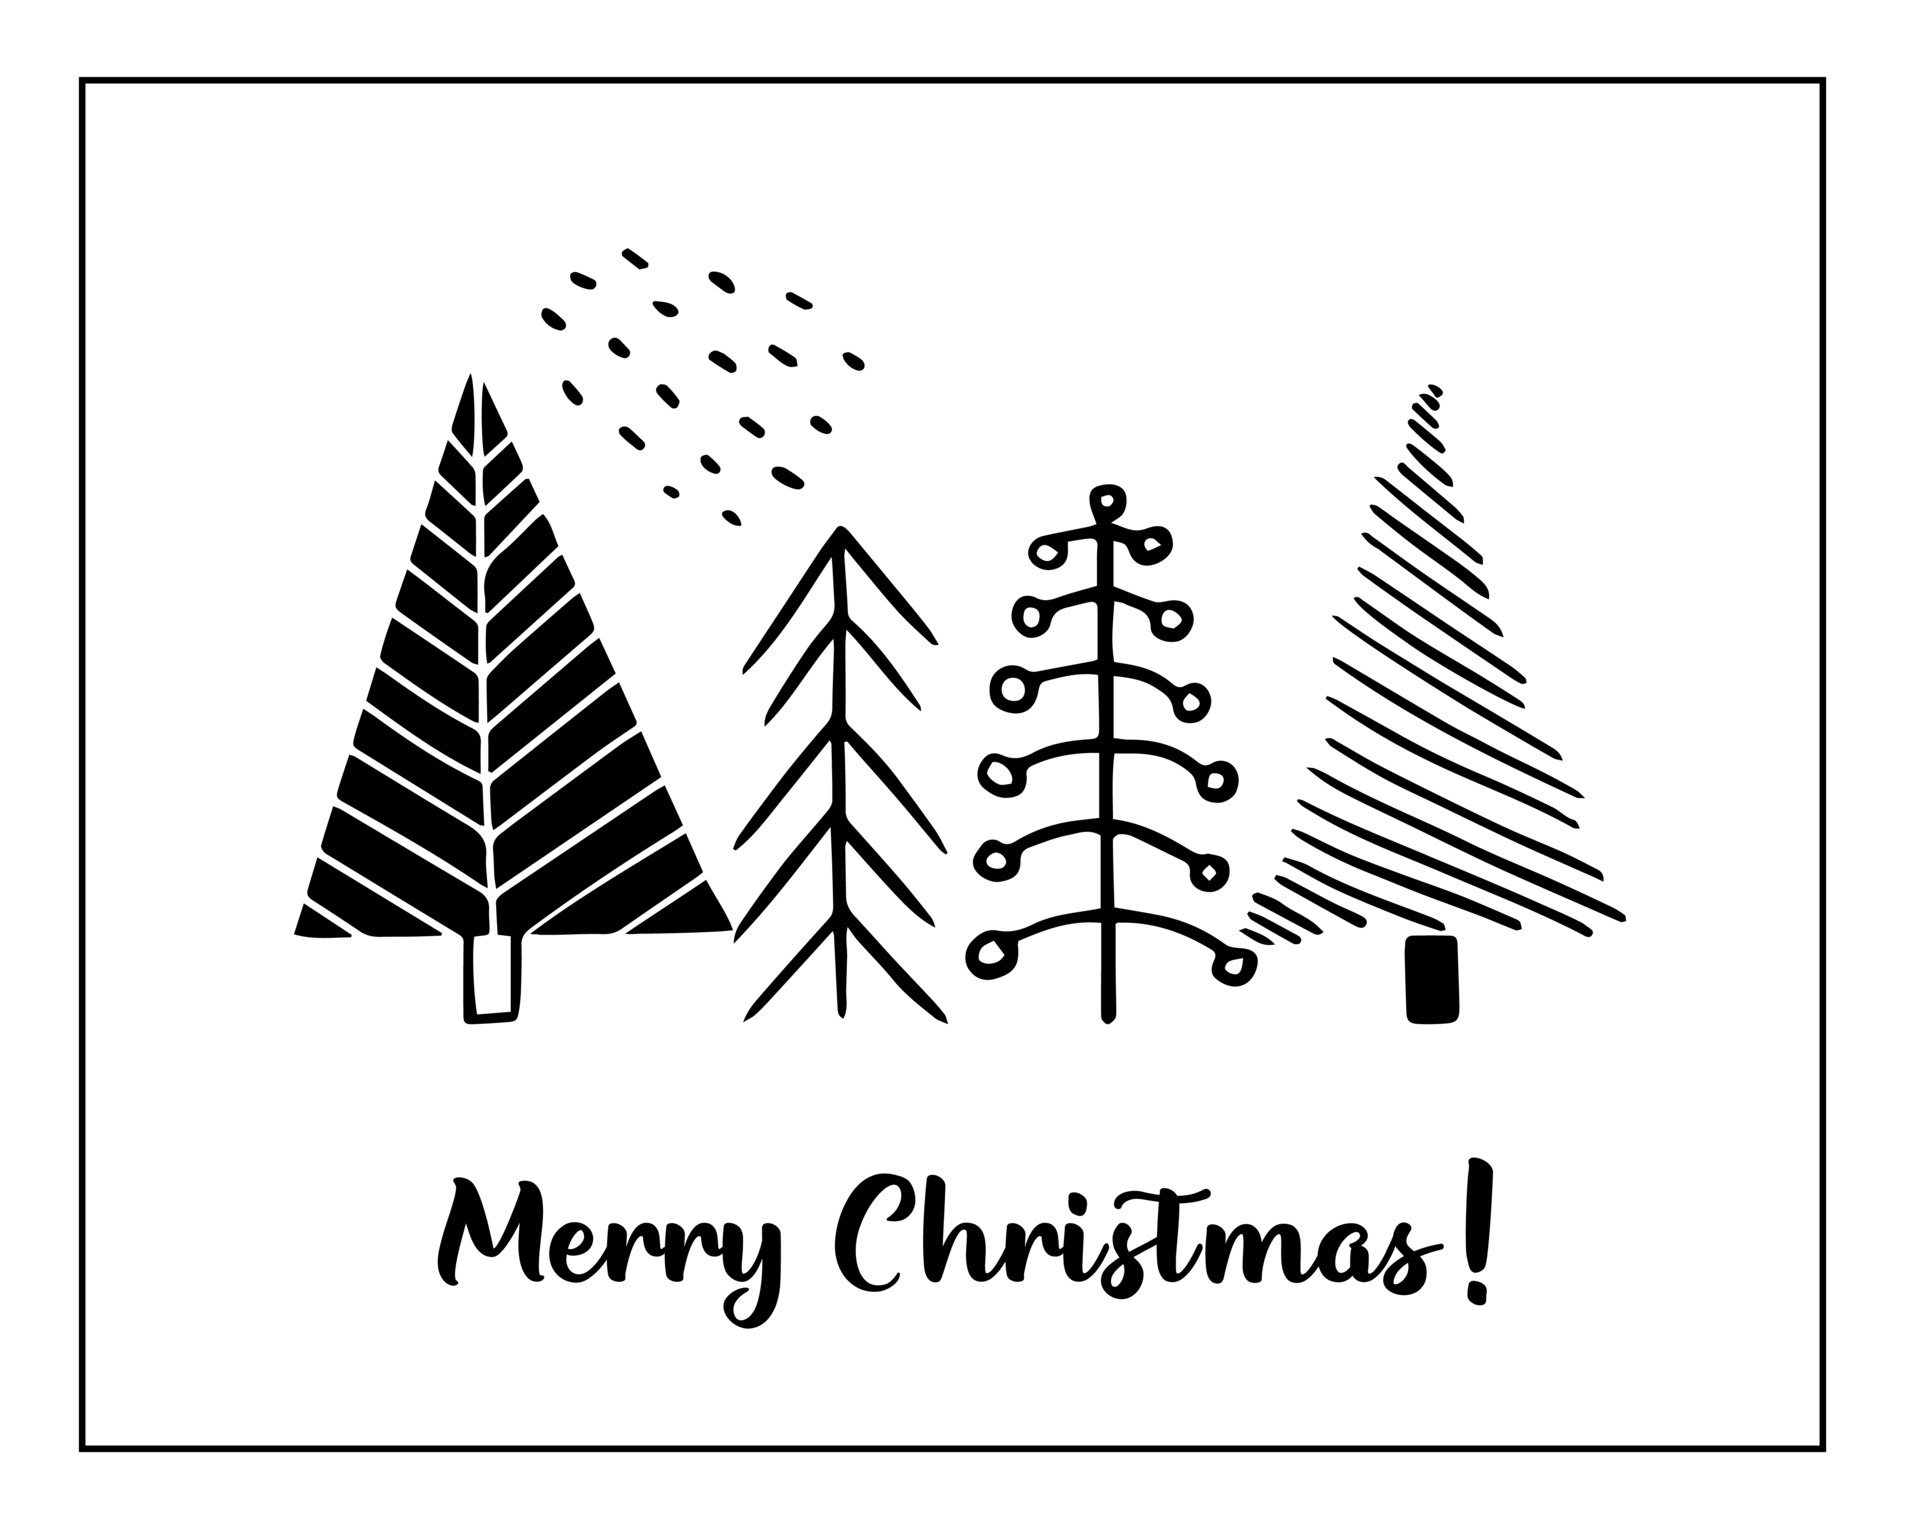 cartões de natal feitos de árvores de natal estilizadas desenhadas à mão.  Elementos de doodle de estilo escandinavo. 6771249 Vetor no Vecteezy